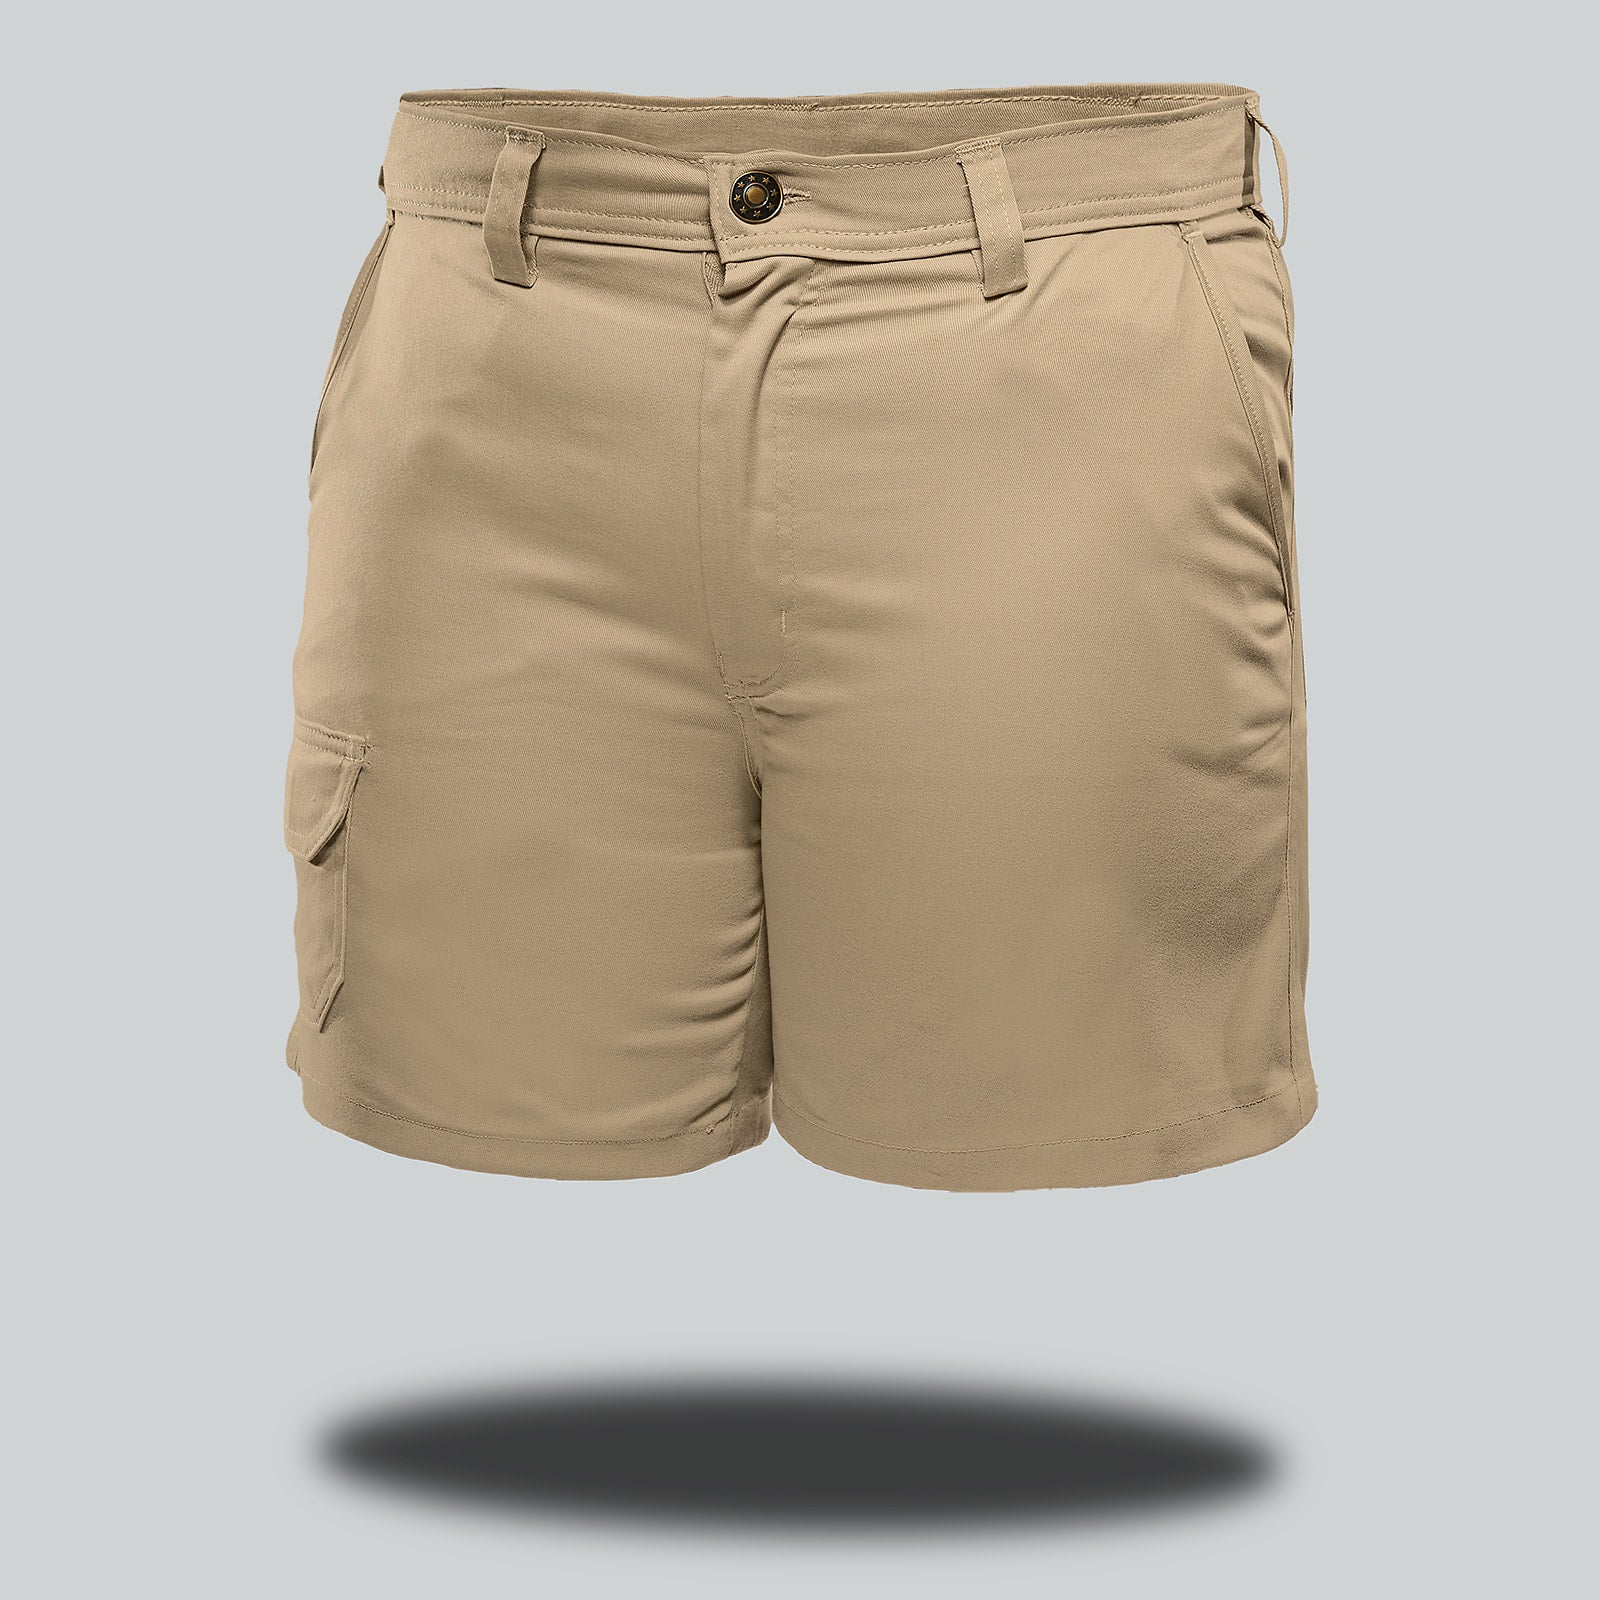 Rhino Shorts - Men's